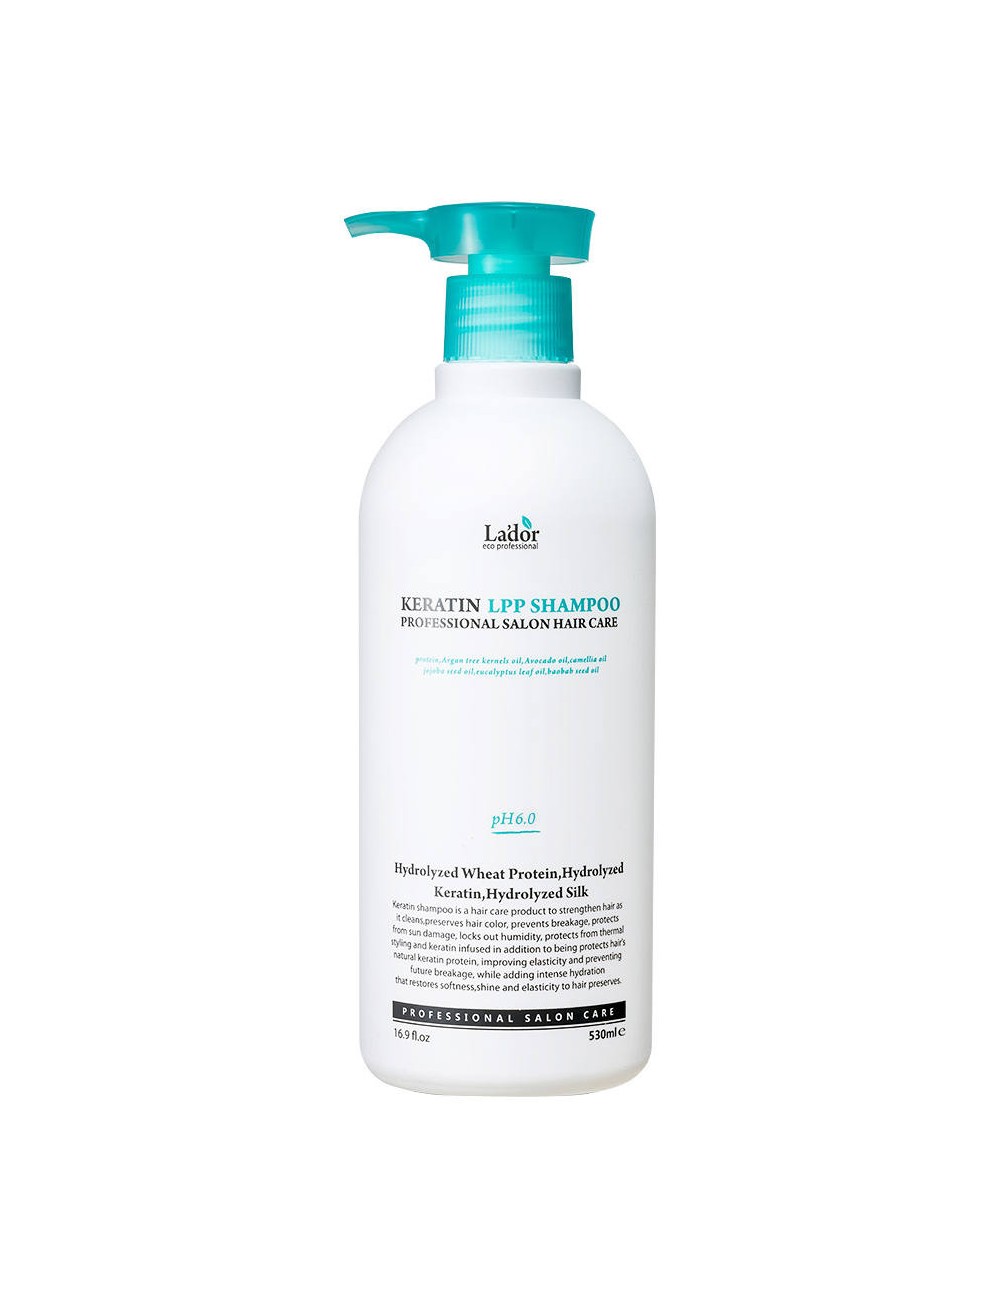 Cabello al mejor precio: Champú Reparador con Queratina La'dor Keratin LPP Shampoo 530 ml de Lador Eco Professional en Skin Thinks - 